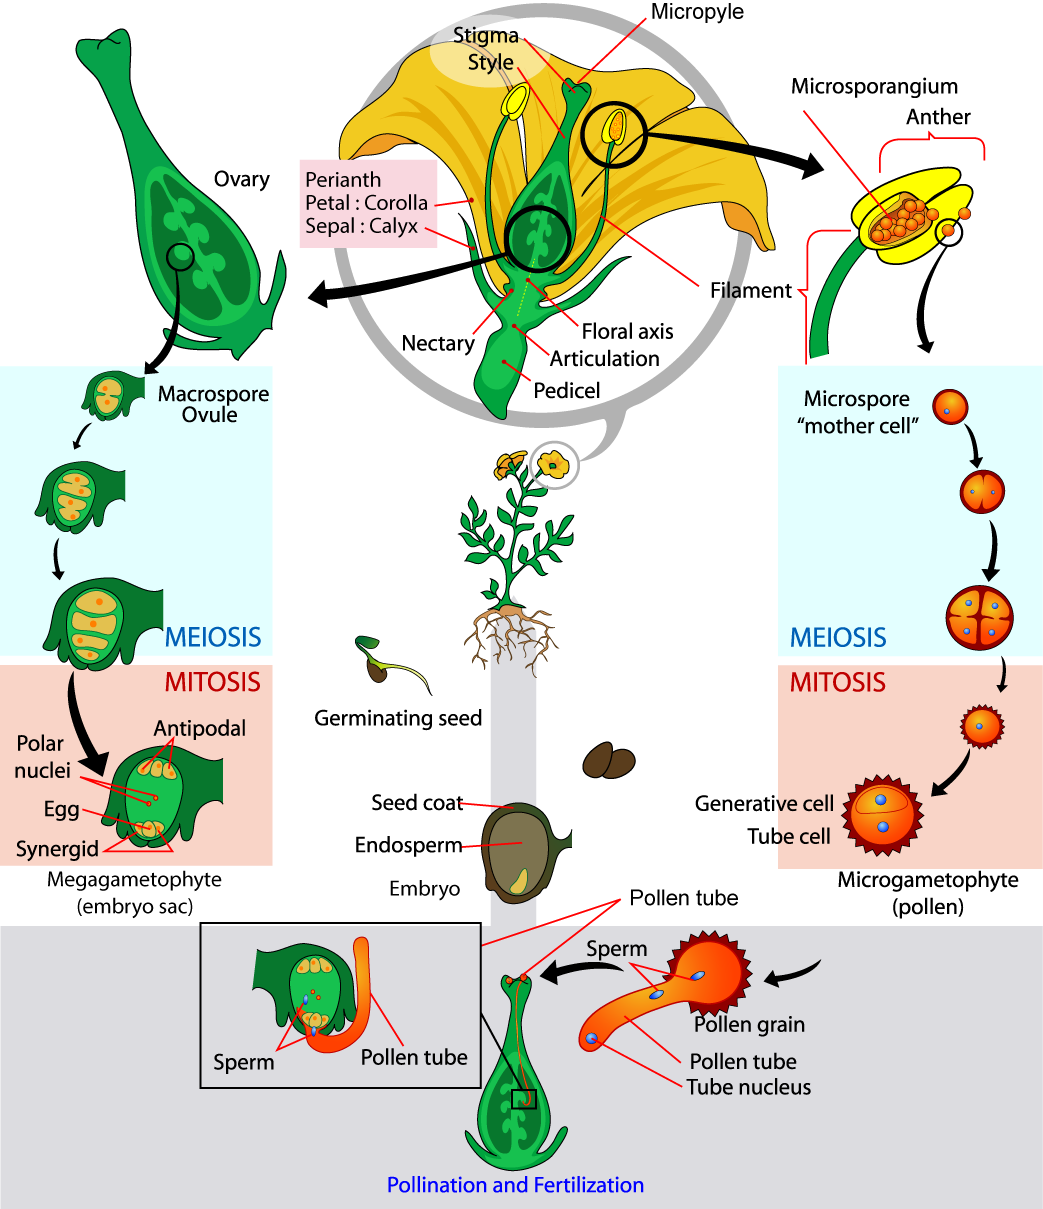 Les parties de la fleur sont représentées. La base du périanthe, qui comprend les pétales et les sépales, est appelée axe de la flore. Un rétrécissement appelé articulation sépare l'axe floral du pédicelle inférieur, qui attache la fleur à une tige. Les microsporanges se trouvent dans les anthères. Des microspores, ou cellules mères, se forment à l'intérieur des microsporanges. La microspore subit une méiose, produisant quatre cellules, chacune devenant un grain de pollen recouvert d'un revêtement dur. Le grain de pollen subit une mitose, produisant une cellule génératrice et une cellule tubulaire. Les macrospores se forment à l'intérieur d'un carpe semblable à un vase, dans les ovules, qui se trouvent dans les ovaires. Les macrospores subissent une méiose, produisant quatre cellules. Les cellules subissent ensuite une mitose, produisant trois antipodes, deux noyaux polaires, un œuf et deux synergides, chacun doté d'un noyau. Ensemble, ces cellules sont appelées mégagamétophyte, ou sac embryonnaire. La pollinisation se produit lorsqu'un grain de pollen atterrit sur le stigmate, la structure plate située au sommet du carpelle. Le noyau du tube se développe dans le style long, jusqu'à l'ovaire. C'est là que la cellule génératrice du sperme féconde l'ovule.